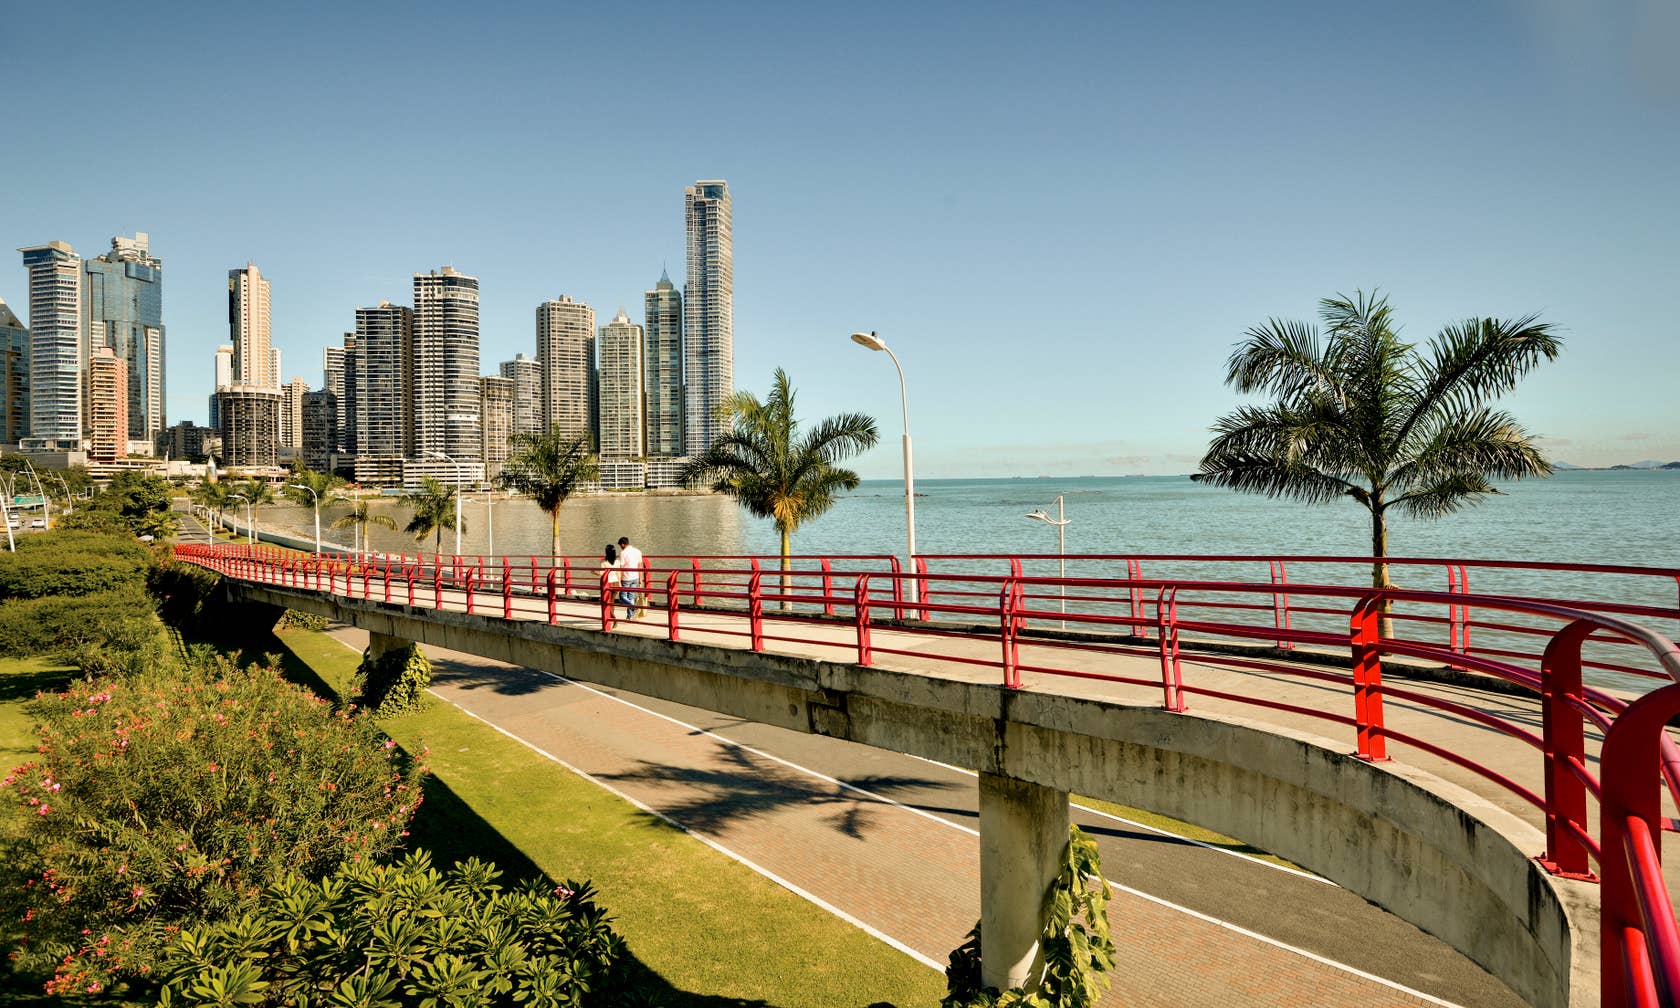 Bérbeadó nyaralók itt: Panama